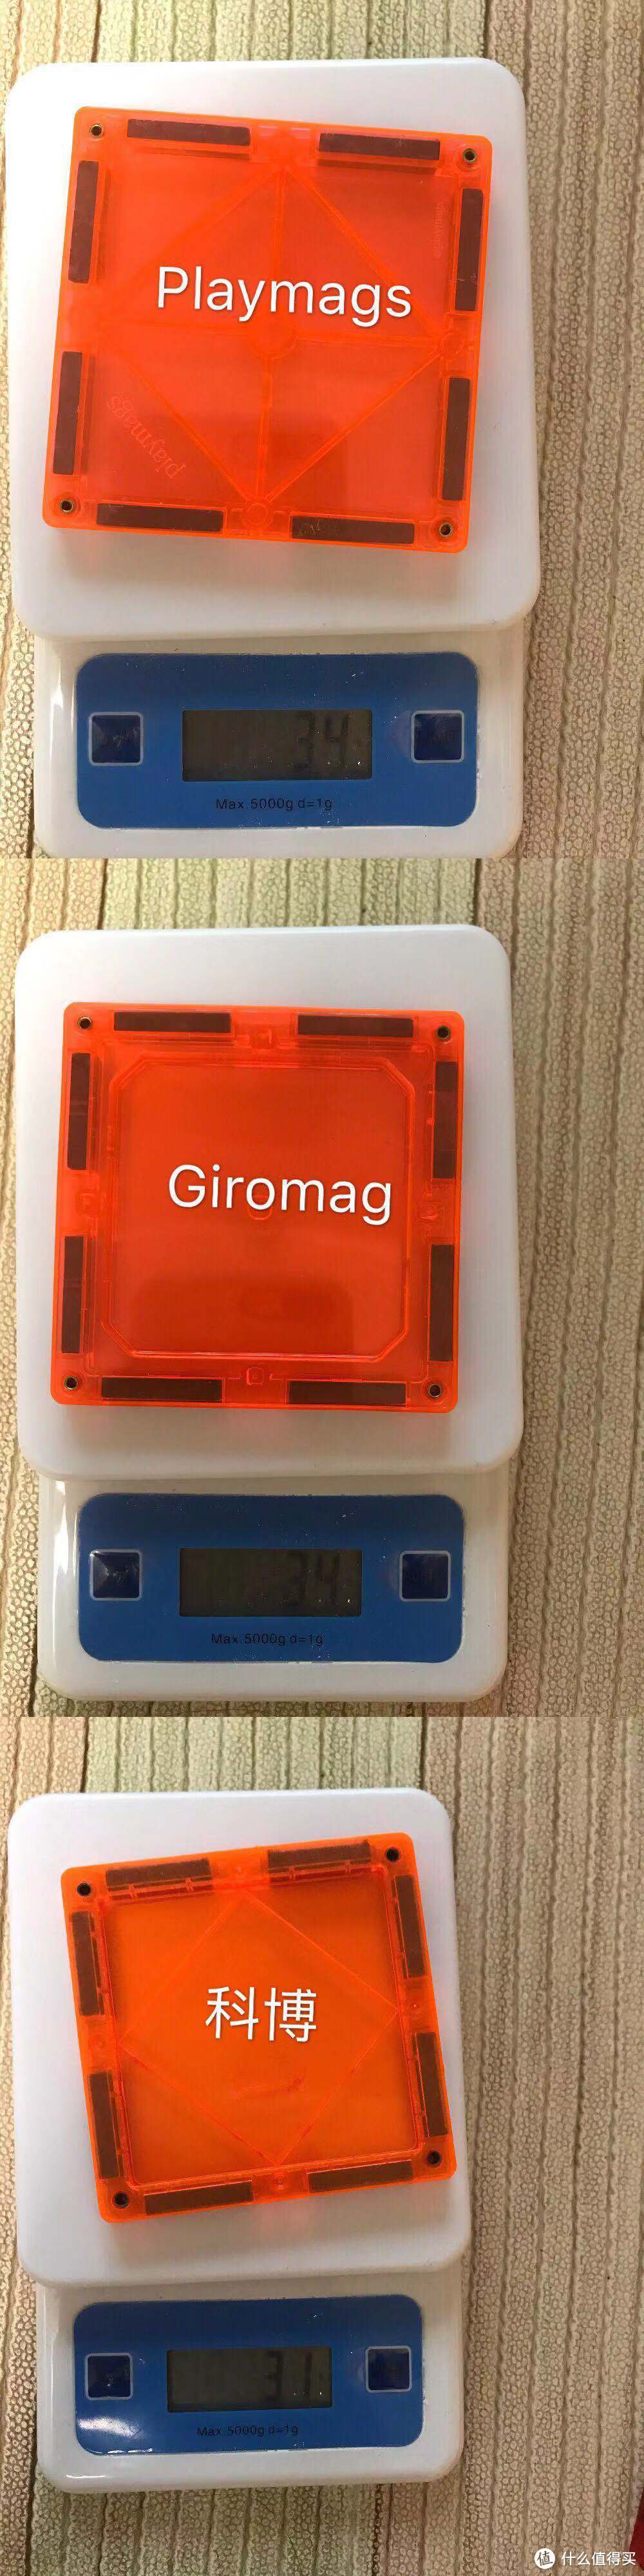 彩窗磁力片评测（一）-科博、Playmags,Giromag